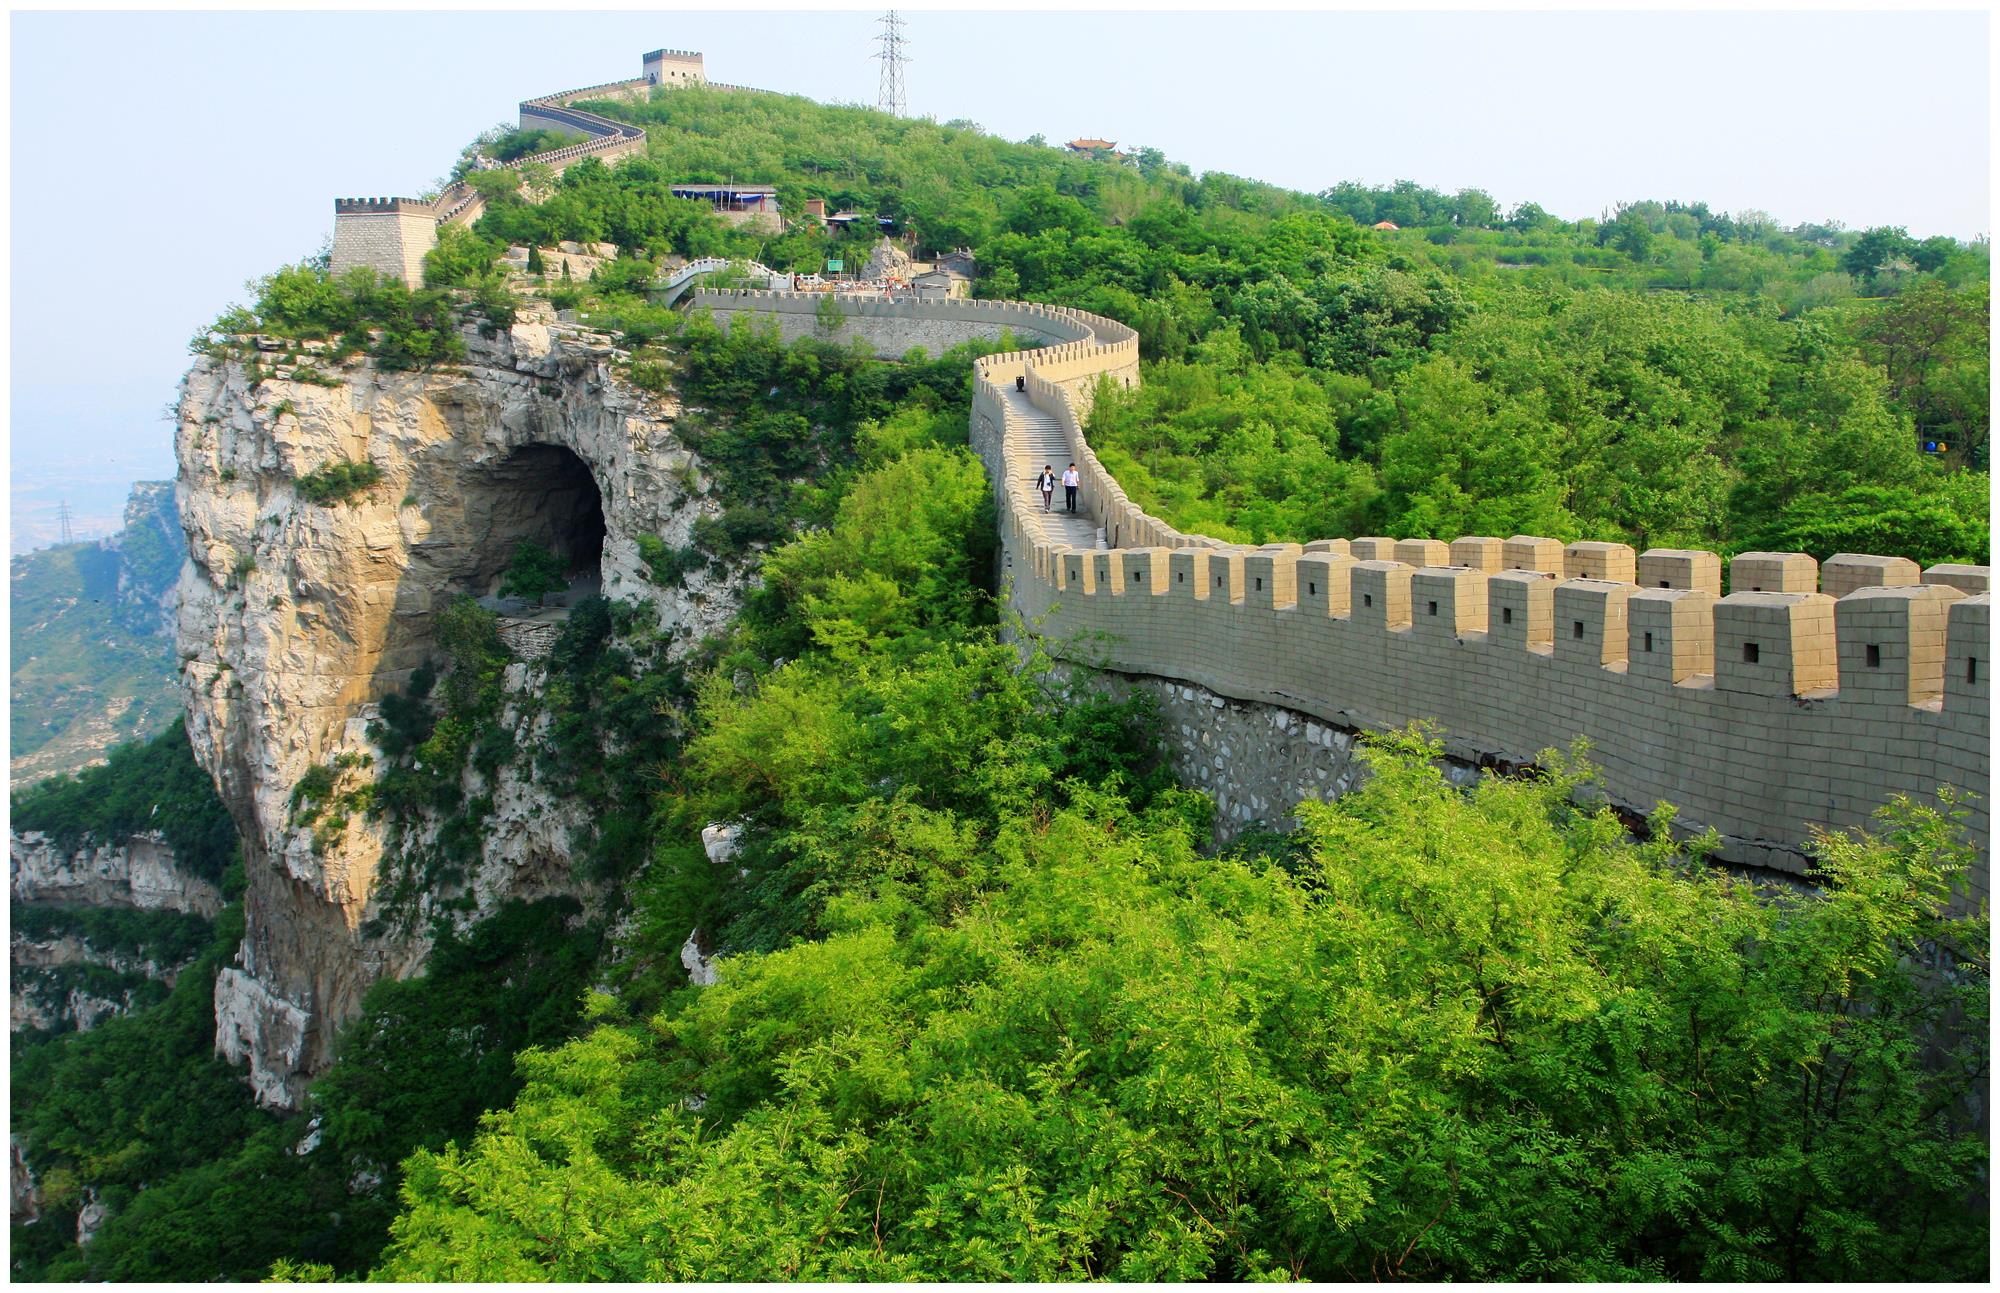 这是中国长城的一部分，蜿蜒于山脉之上，城墙与绿色植被交织，展现出历史与自然的和谐。天空清朗，景色宜人。